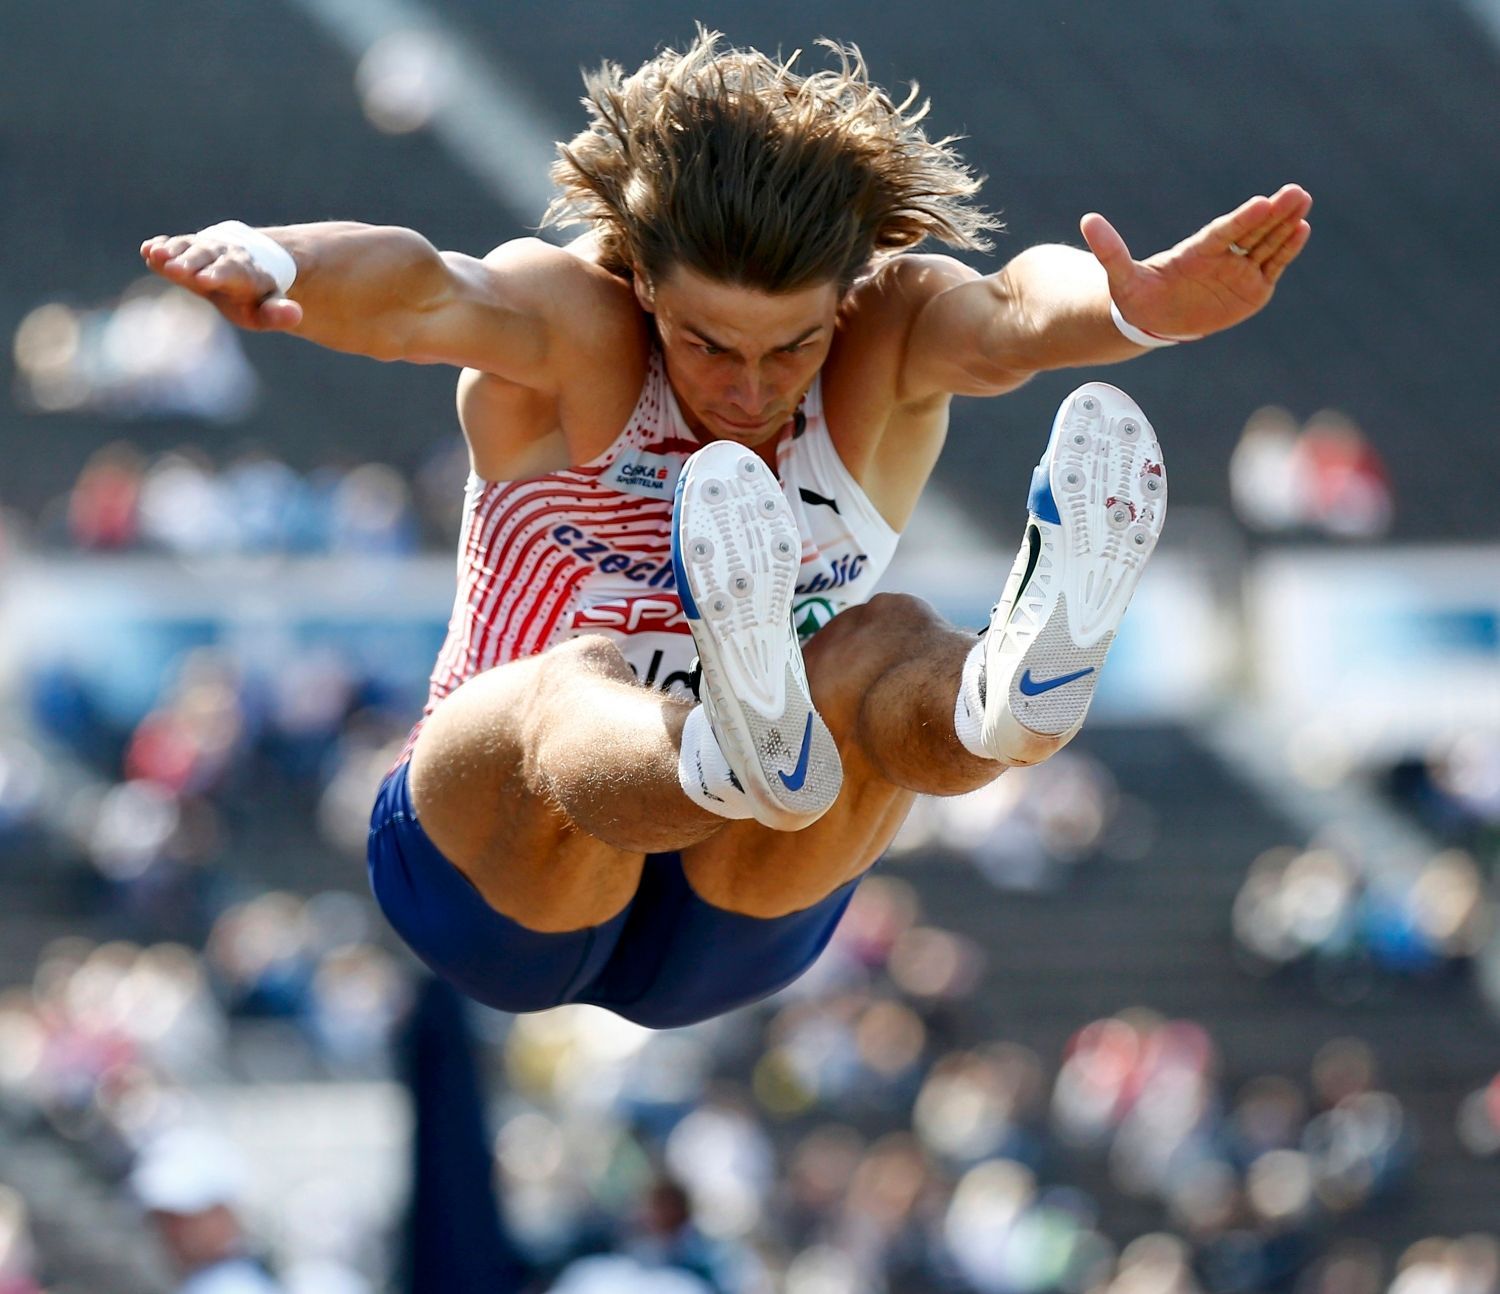 Adam Helcelet skáče do dálky na Mistrovství Evropy v atletice 2012 v Helsinkách.